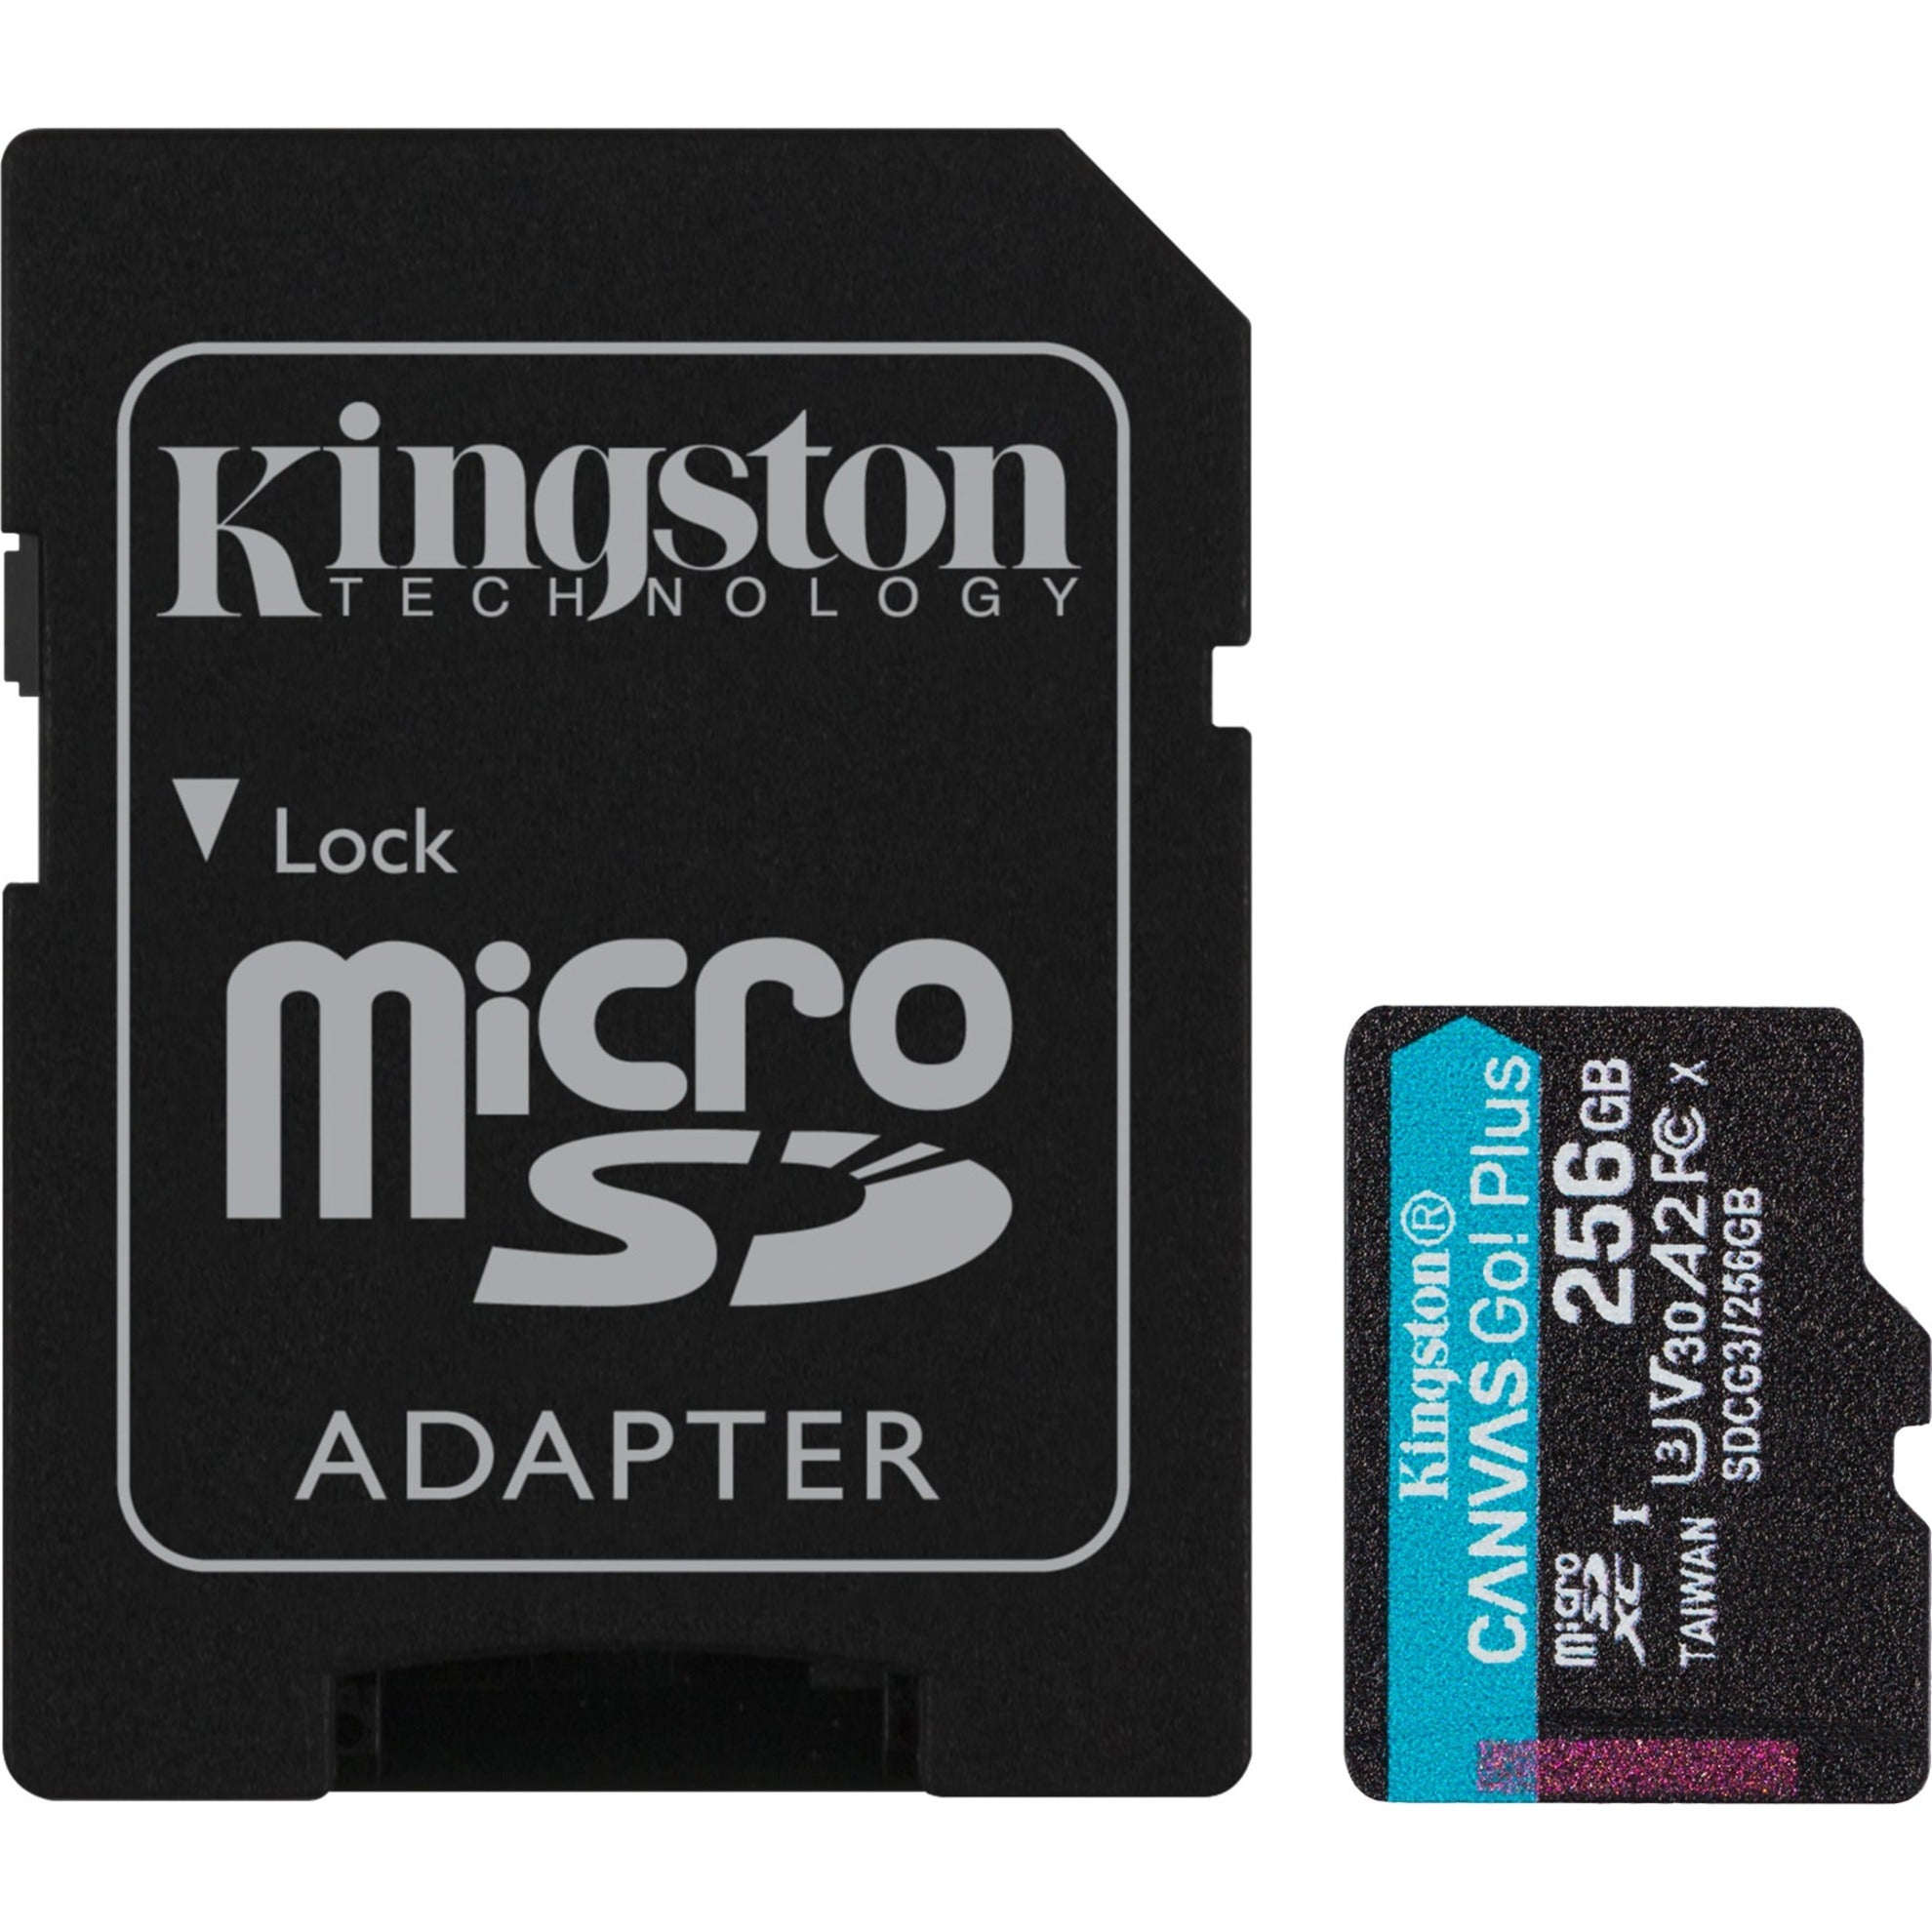 كينغستون بطاقة ذاكرة microSD كانفاس جو! بلس، 256 جيجابايت، 170 ميجابايت/ثانية سرعة القراءة، UHS-I (U3)